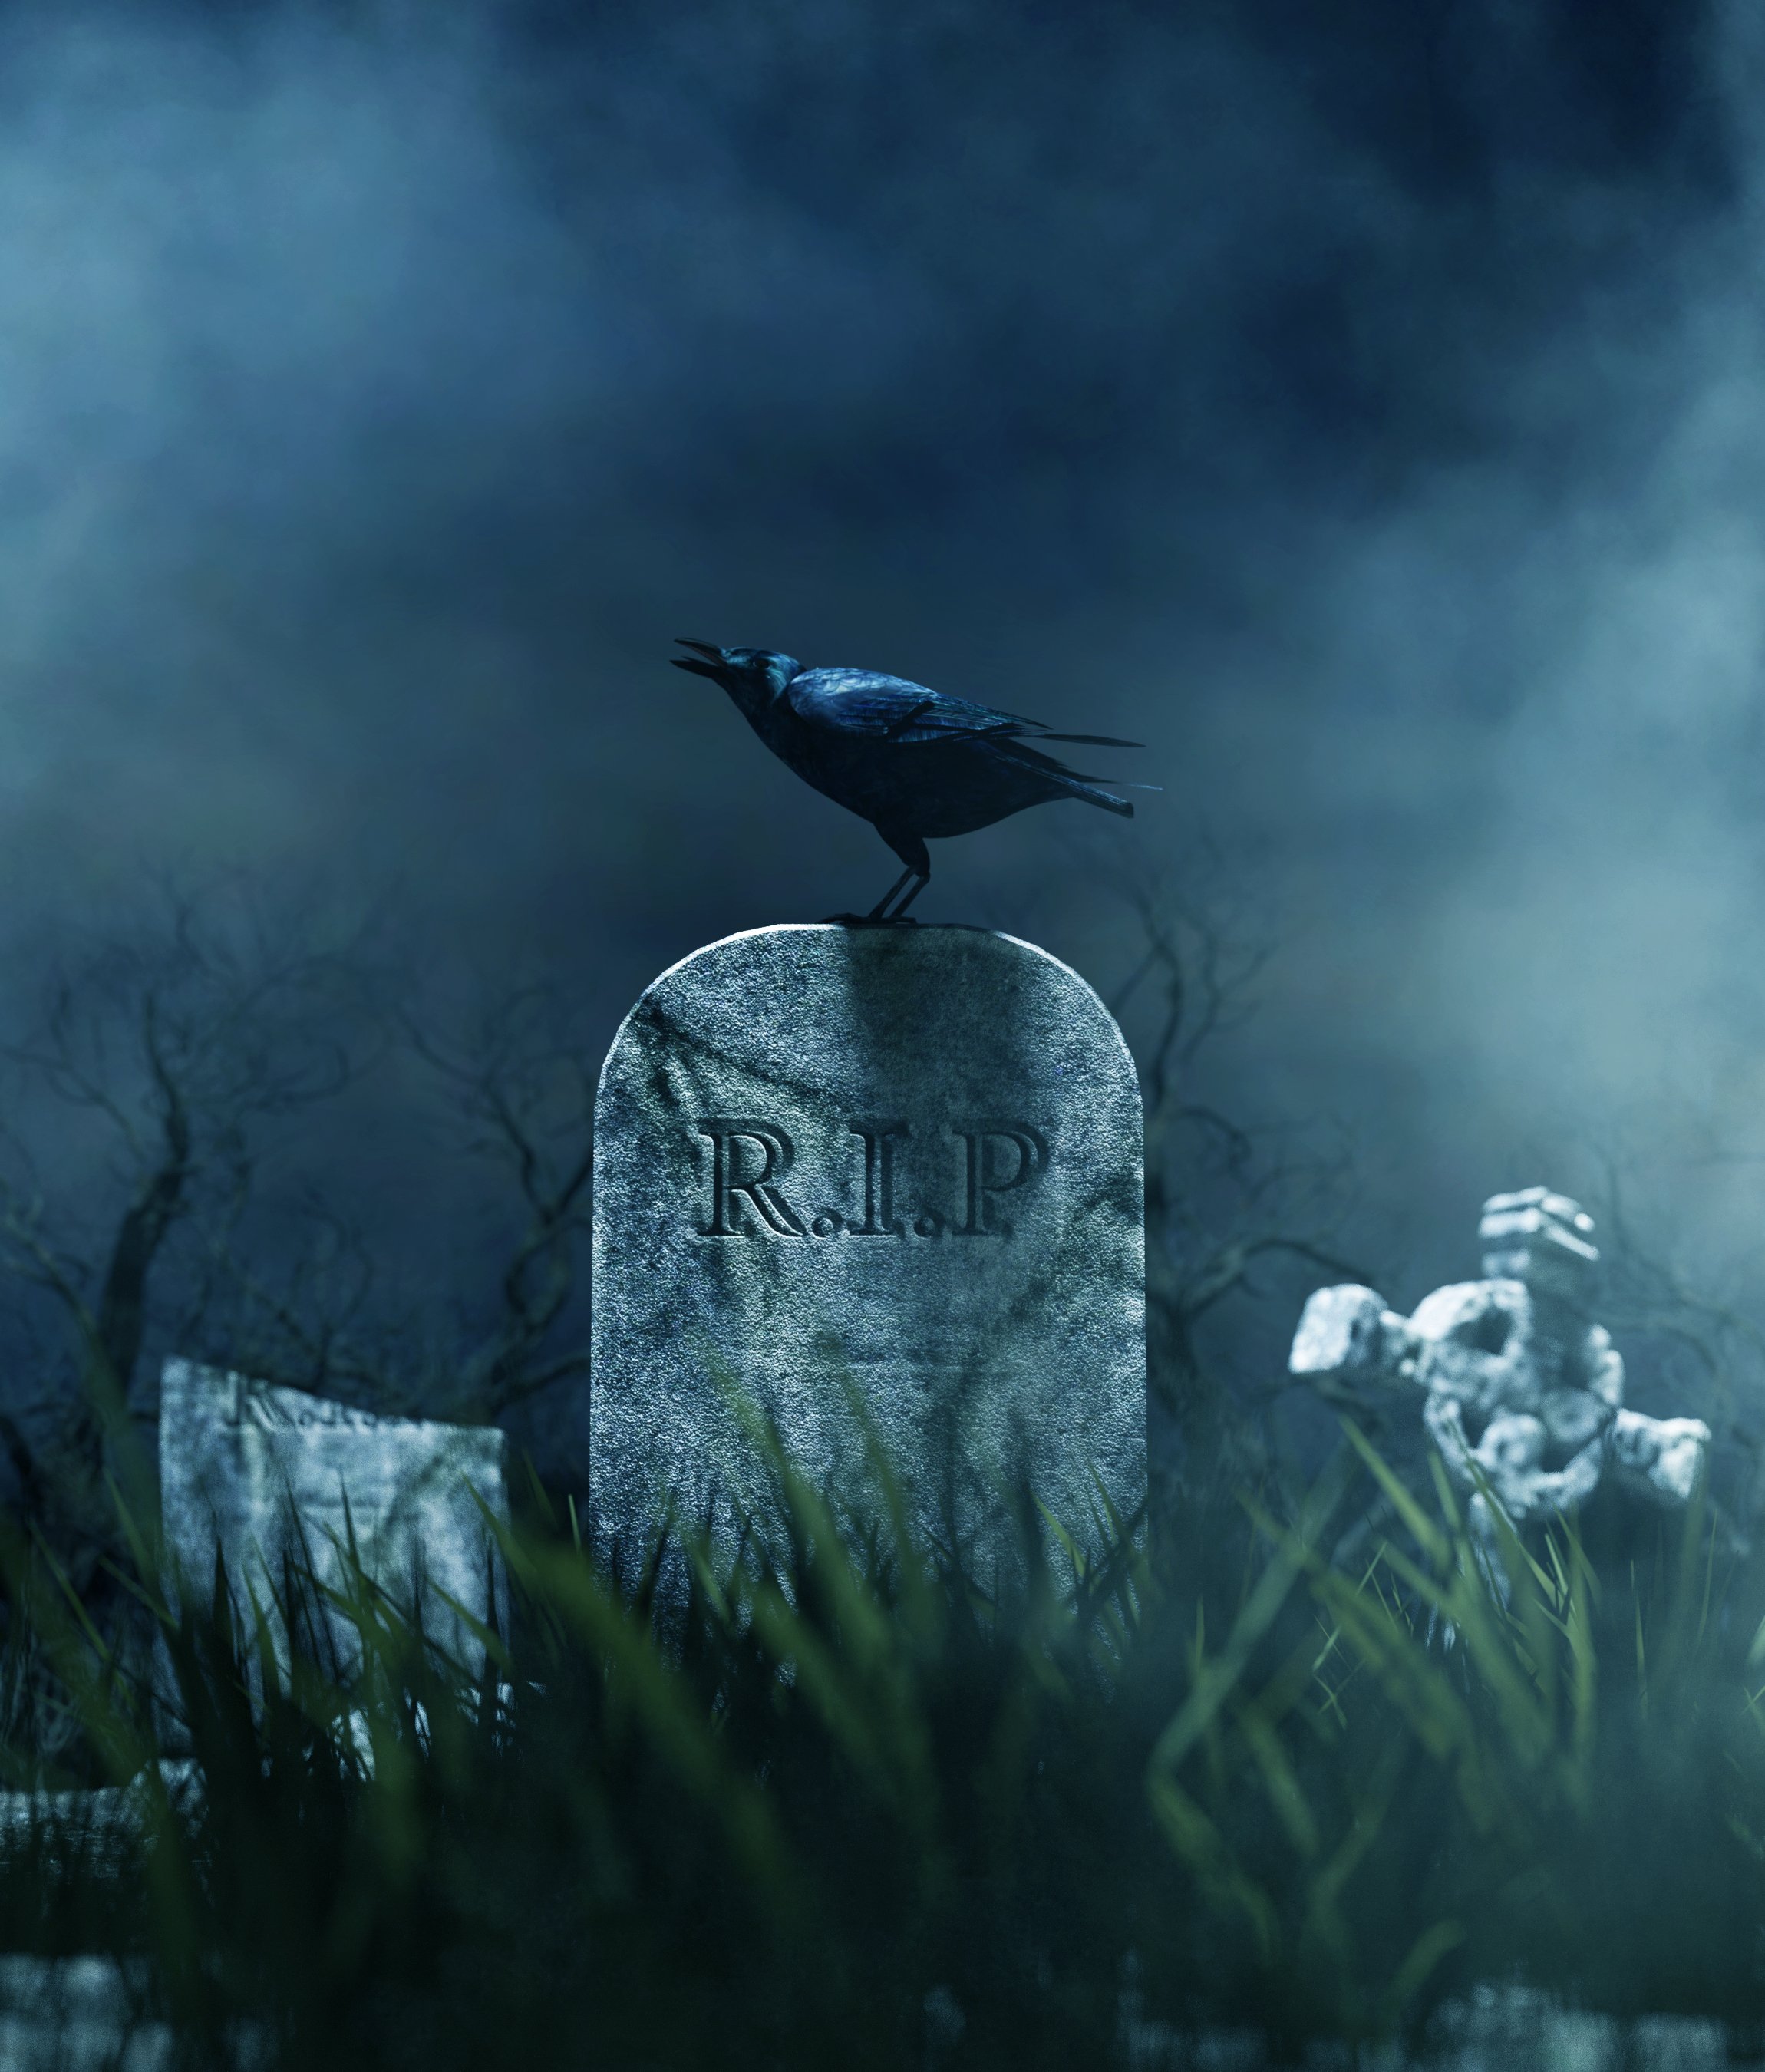 A Spooky Cemetery on Halloween